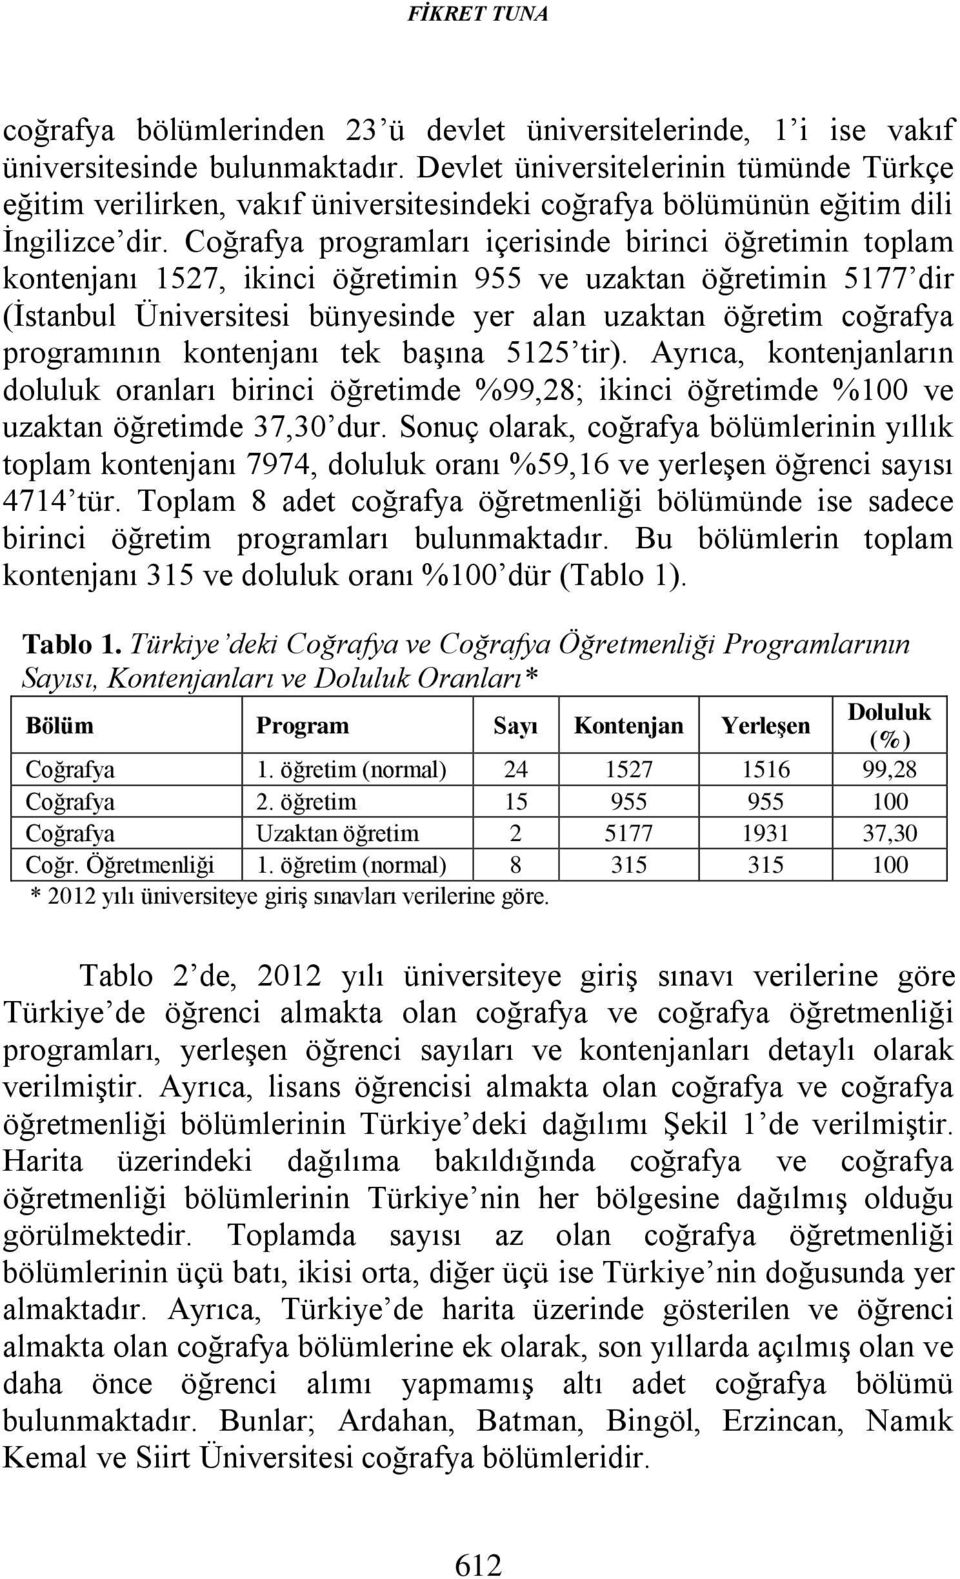 Coğrafya programları içerisinde birinci öğretimin toplam kontenjanı 1527, ikinci öğretimin 955 ve uzaktan öğretimin 5177 dir (İstanbul Üniversitesi bünyesinde yer alan uzaktan öğretim coğrafya